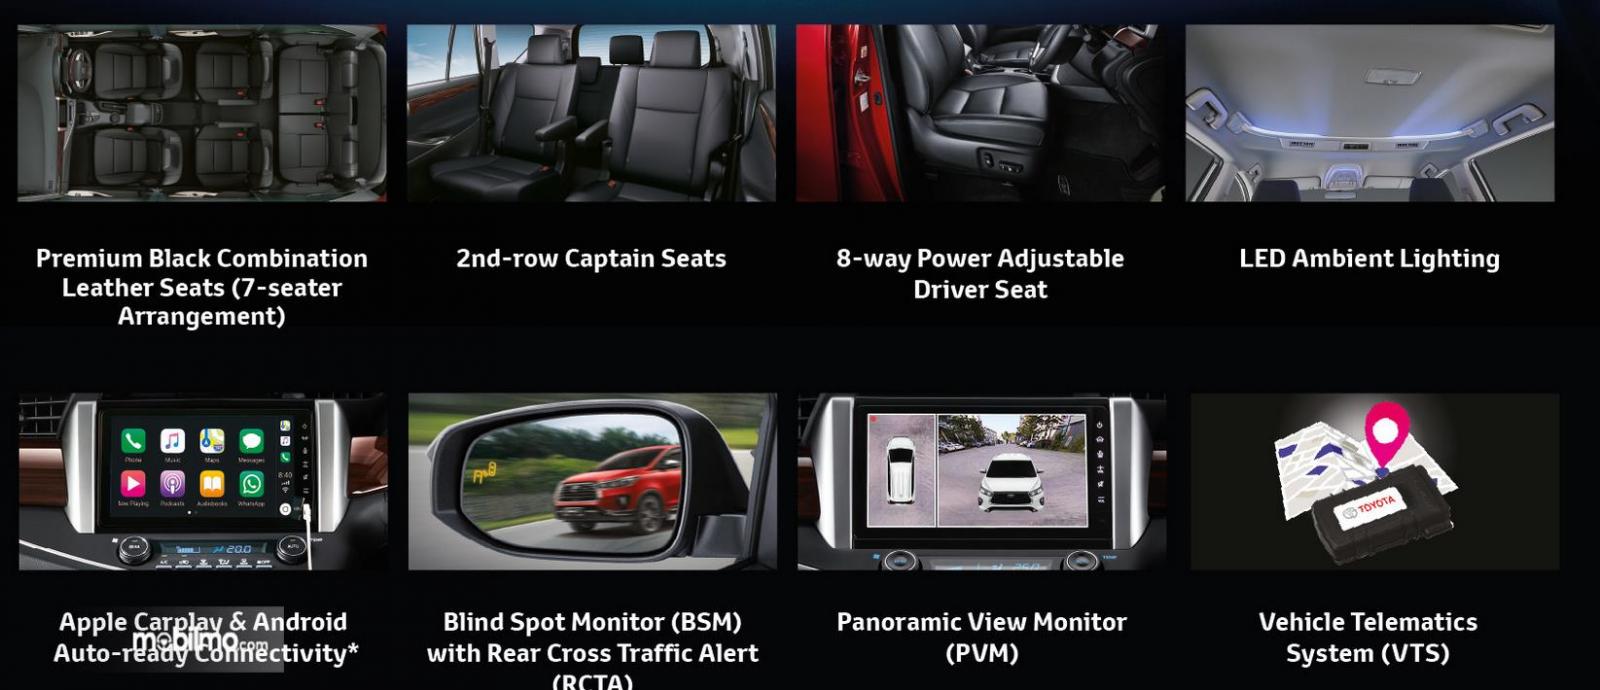 Gambar ini menunjukkan beberapa fitur yang diberikan pada mobil Toyota Innova versi Malaysia